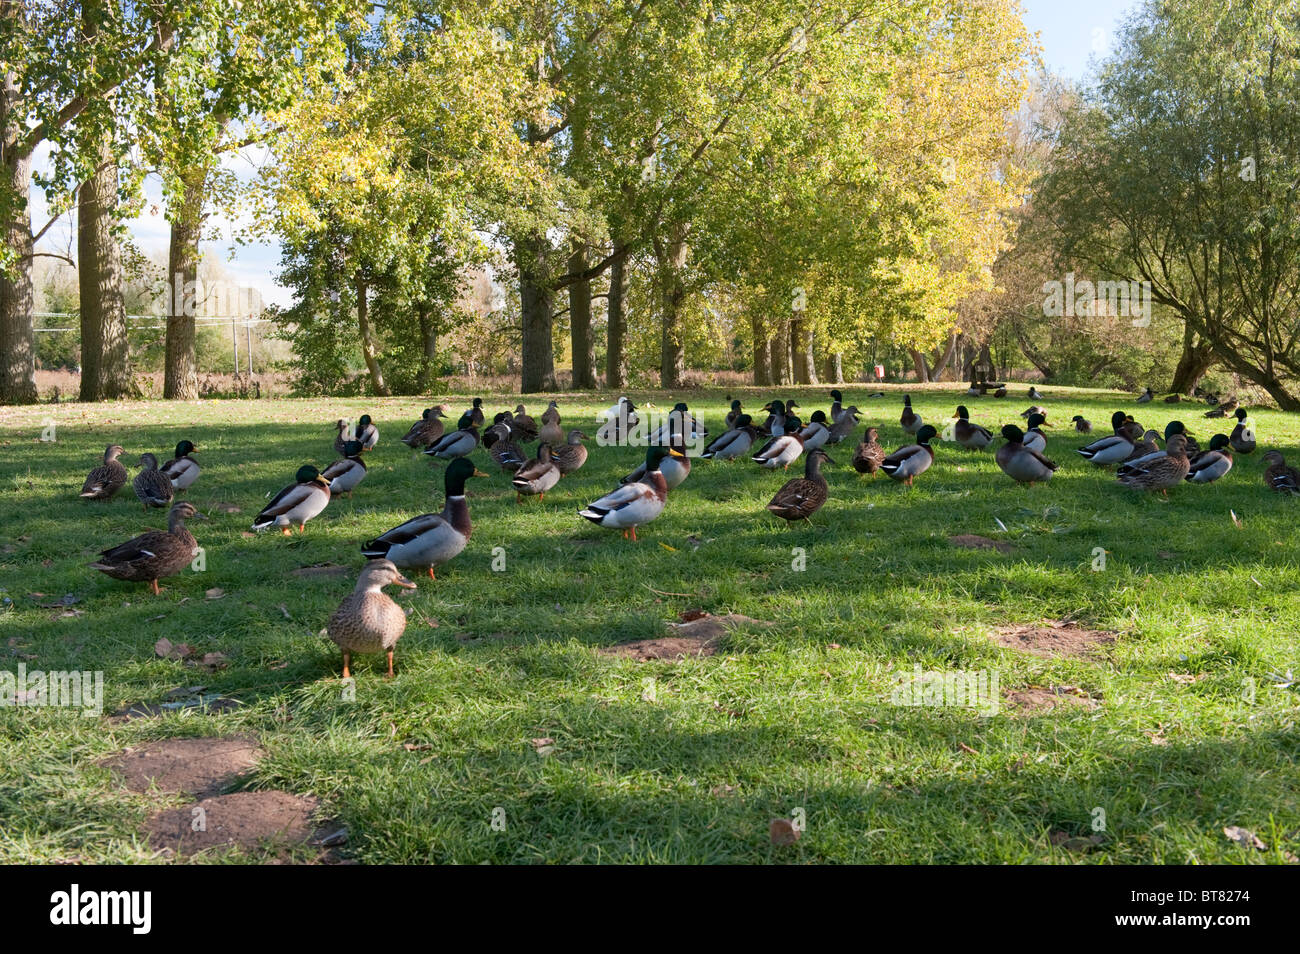 Ducks at the river side in Fakenham, Norfolk Stock Photo